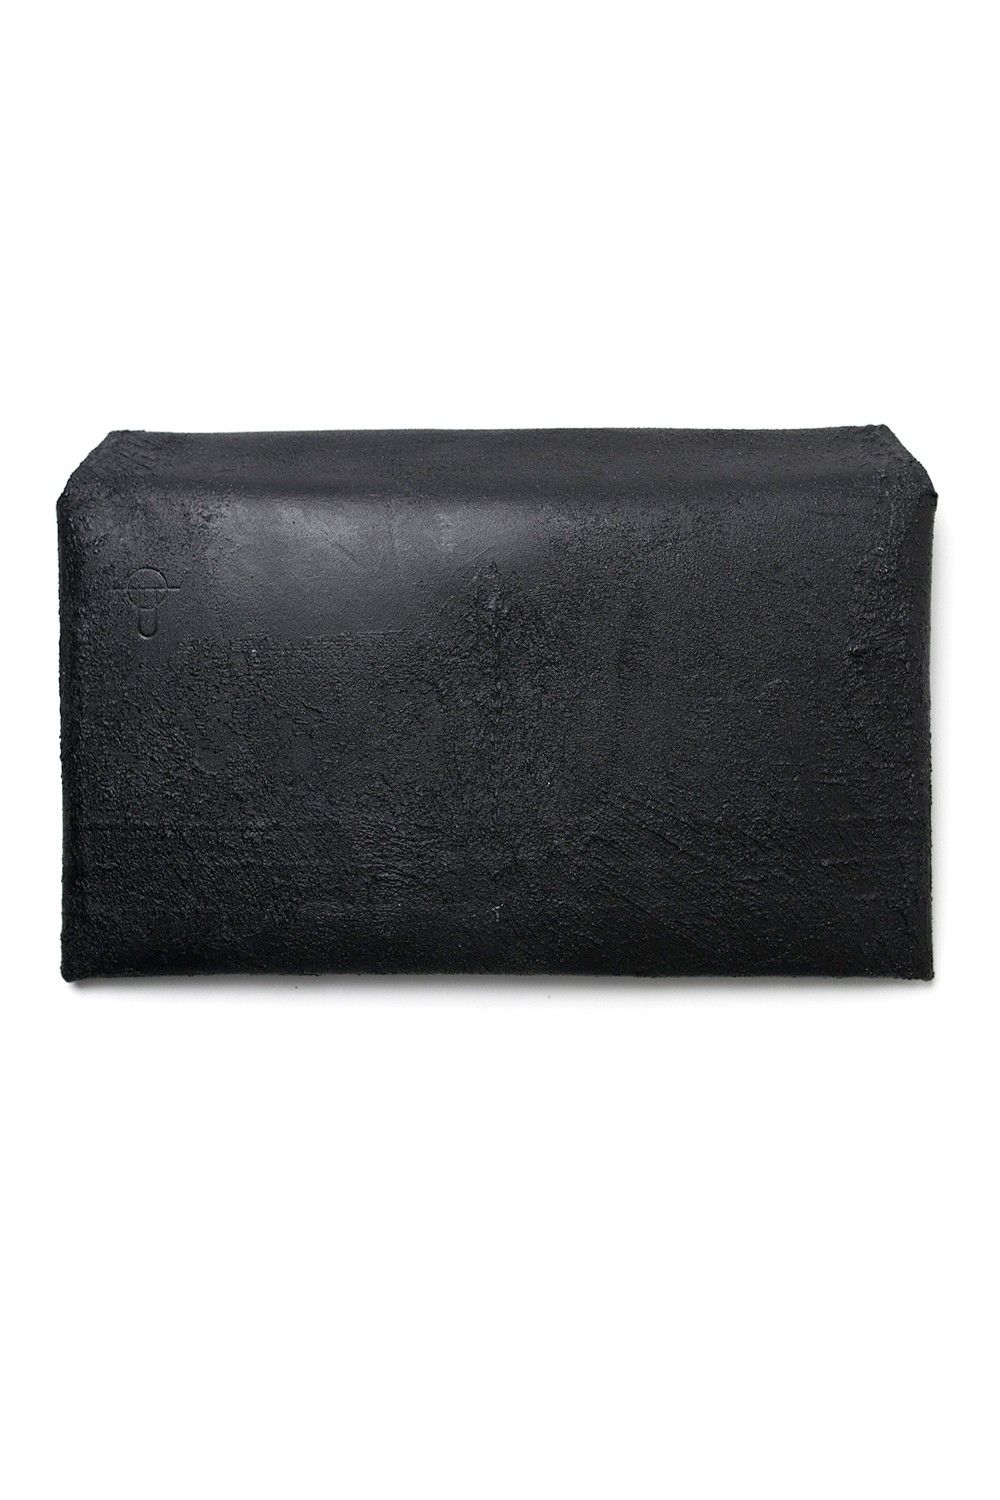 【ラスト1点】封筒型長財布 [黒い壁] / mw02-bk